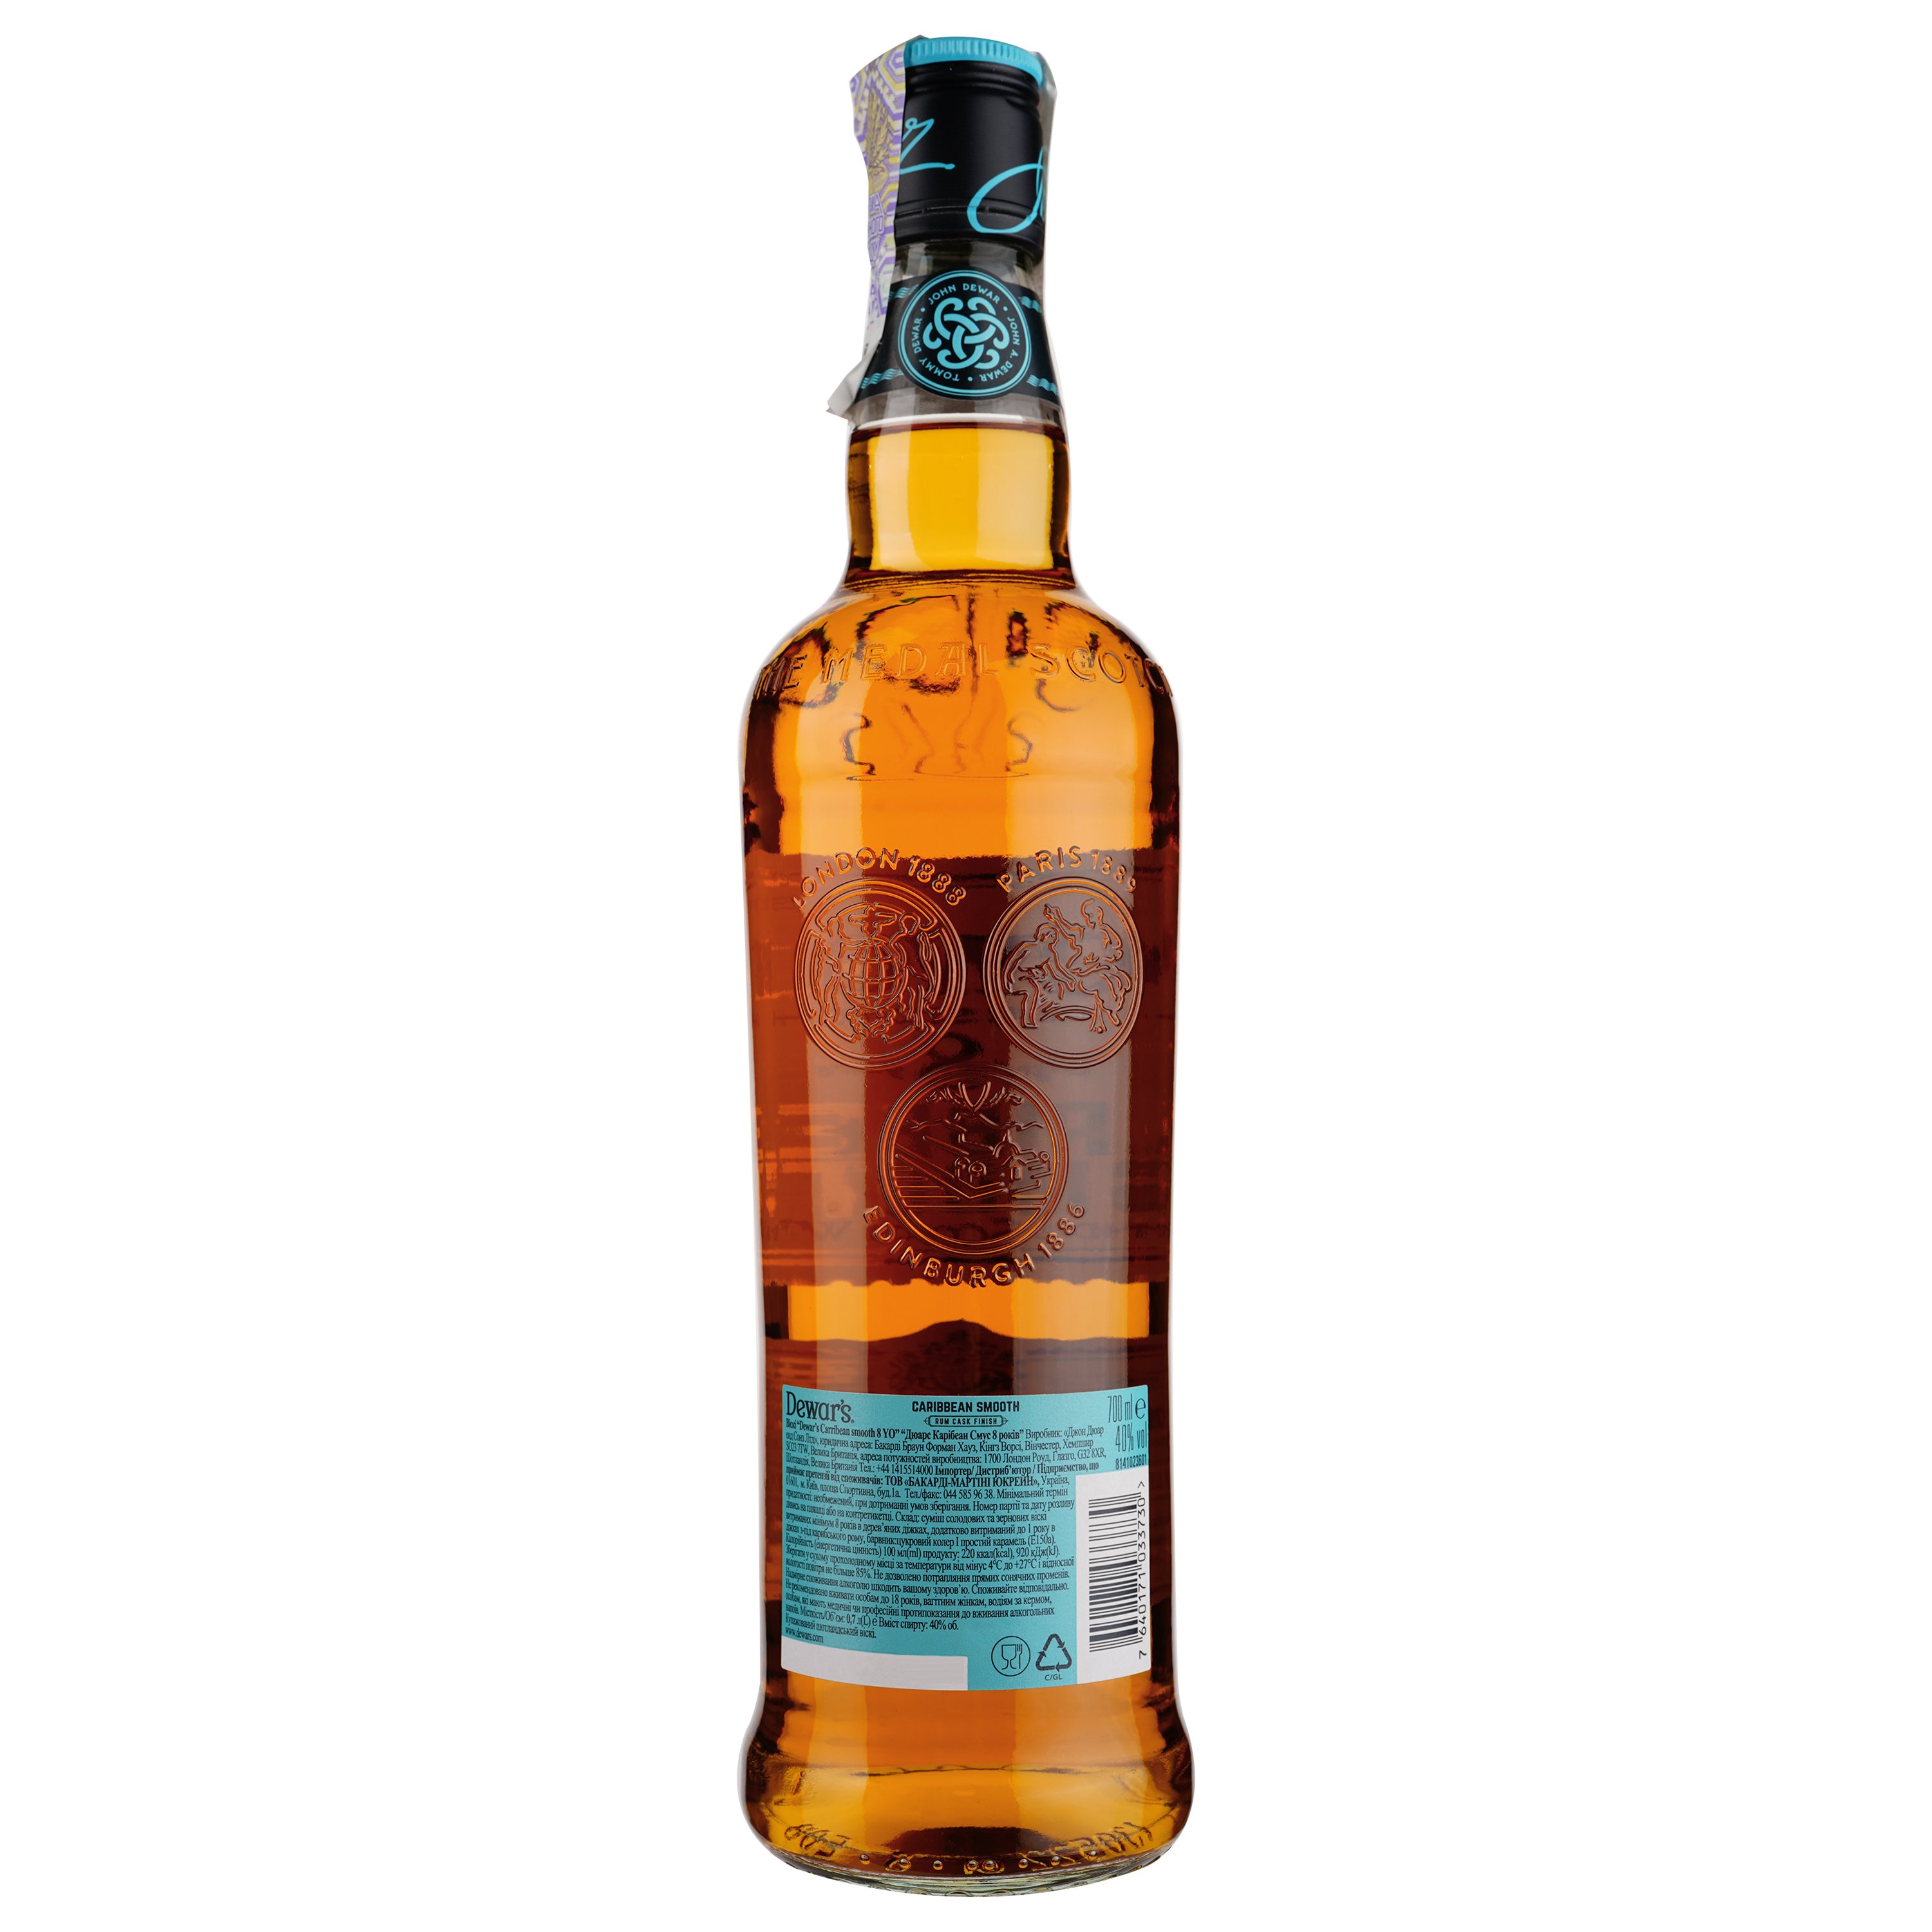 Віскі Dewar's Caribbean Smooth 8 yo Blended Scotch Whisky 40% 0.7 л - фото 2